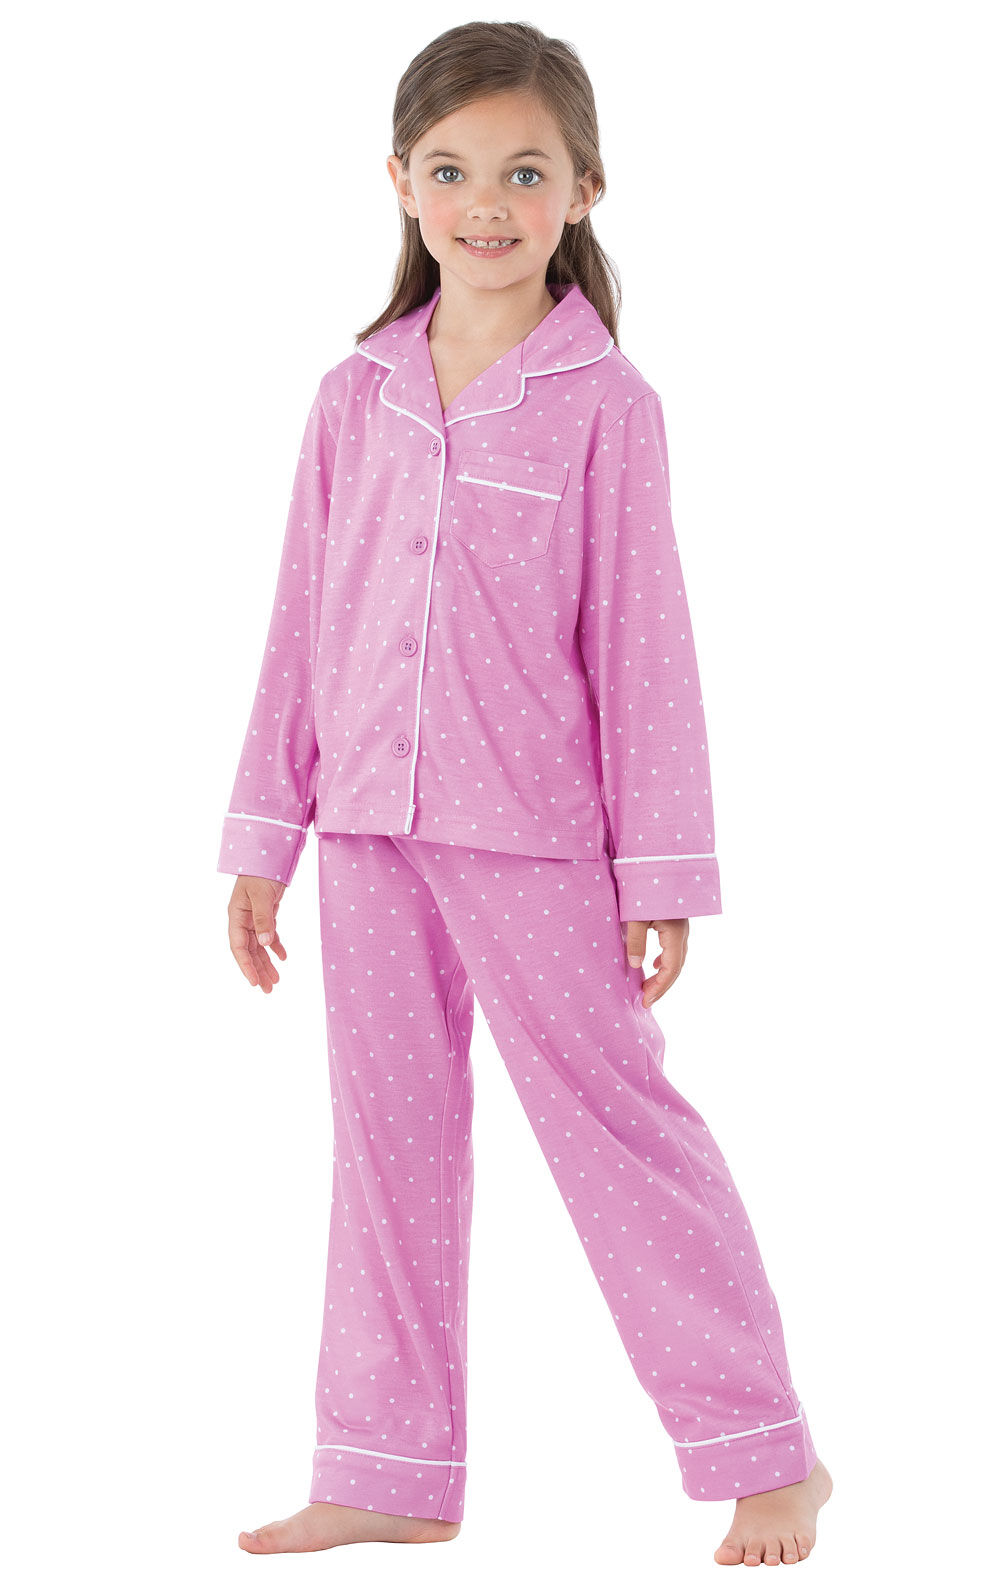 Kids Button Down Pajamas PajamaGram Pajamas for Kids